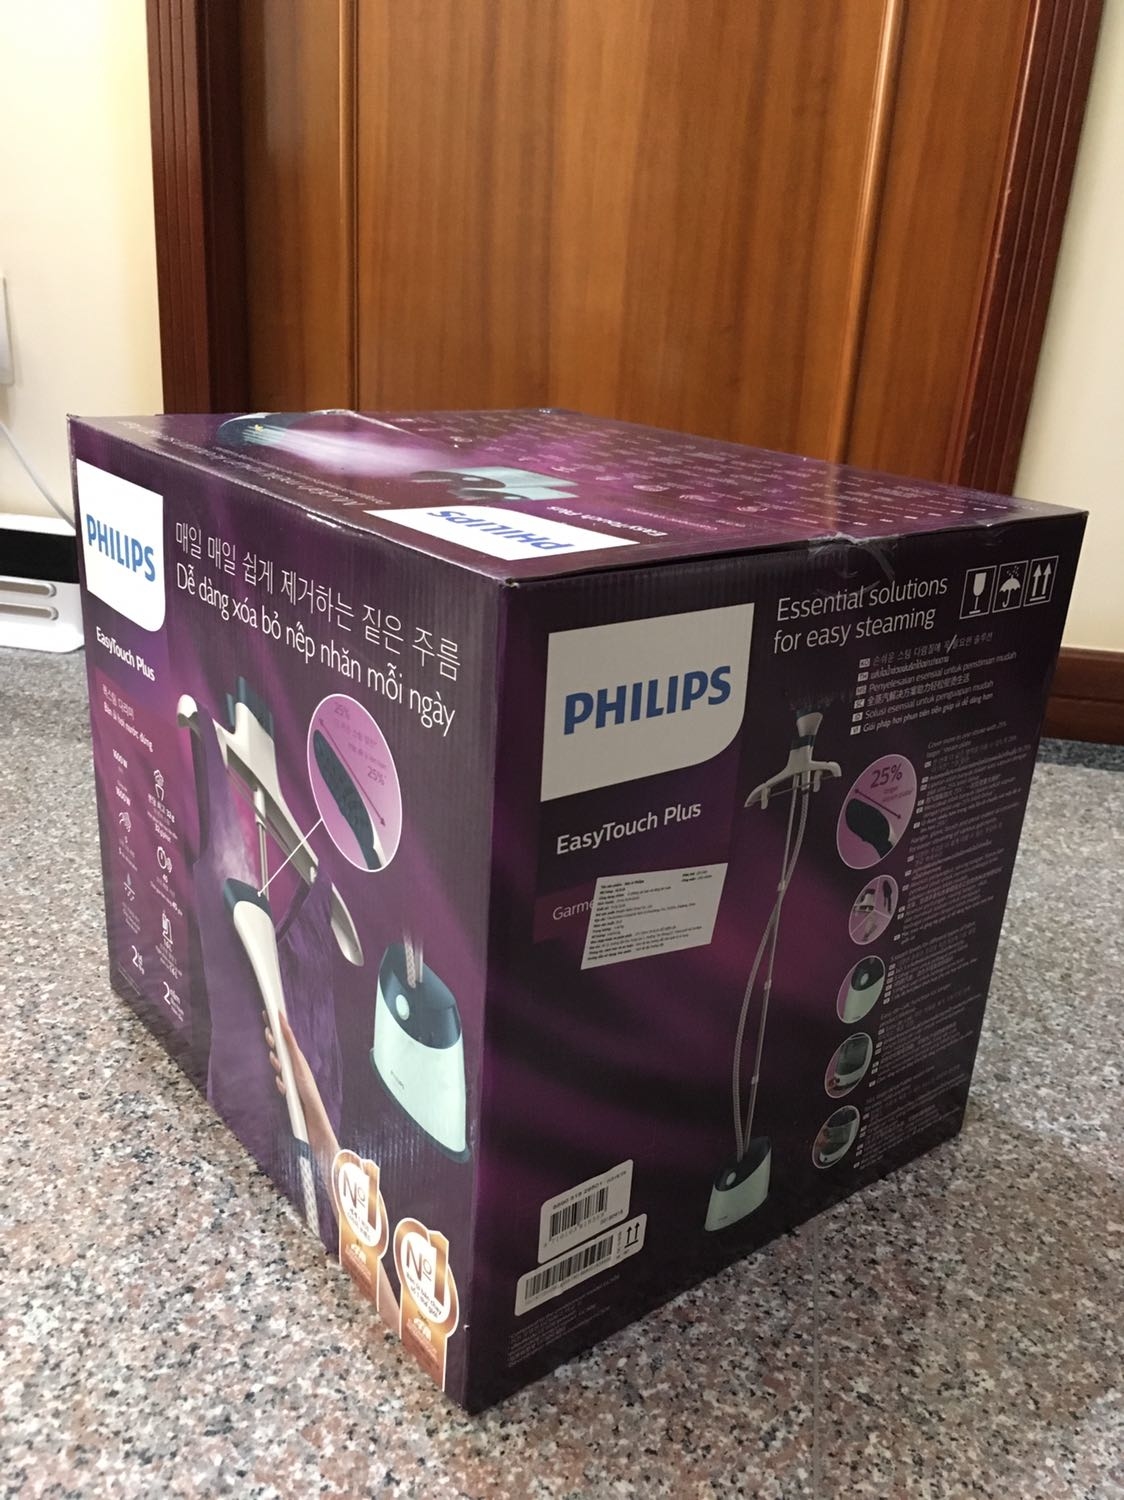 Bàn ủi hơi nước đứng Philips GC518 (Xanh) - Hãng phân phối